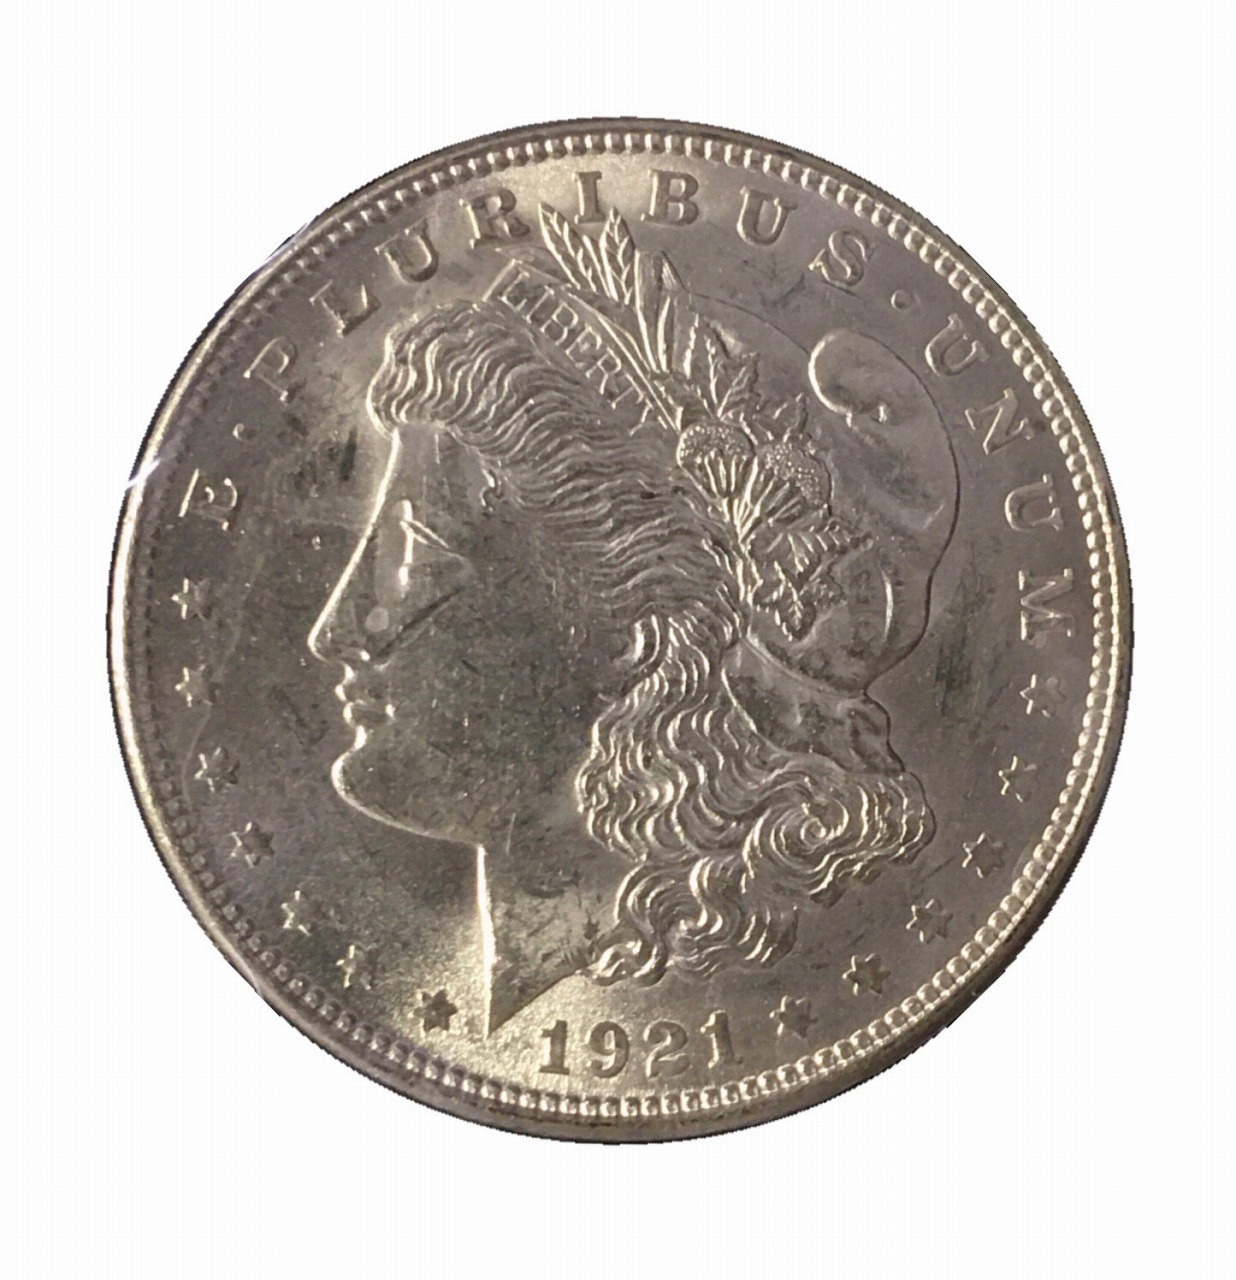 ピースダラー銀貨 (1923年)アメリカ [010b025f0707010106080c0307060a 